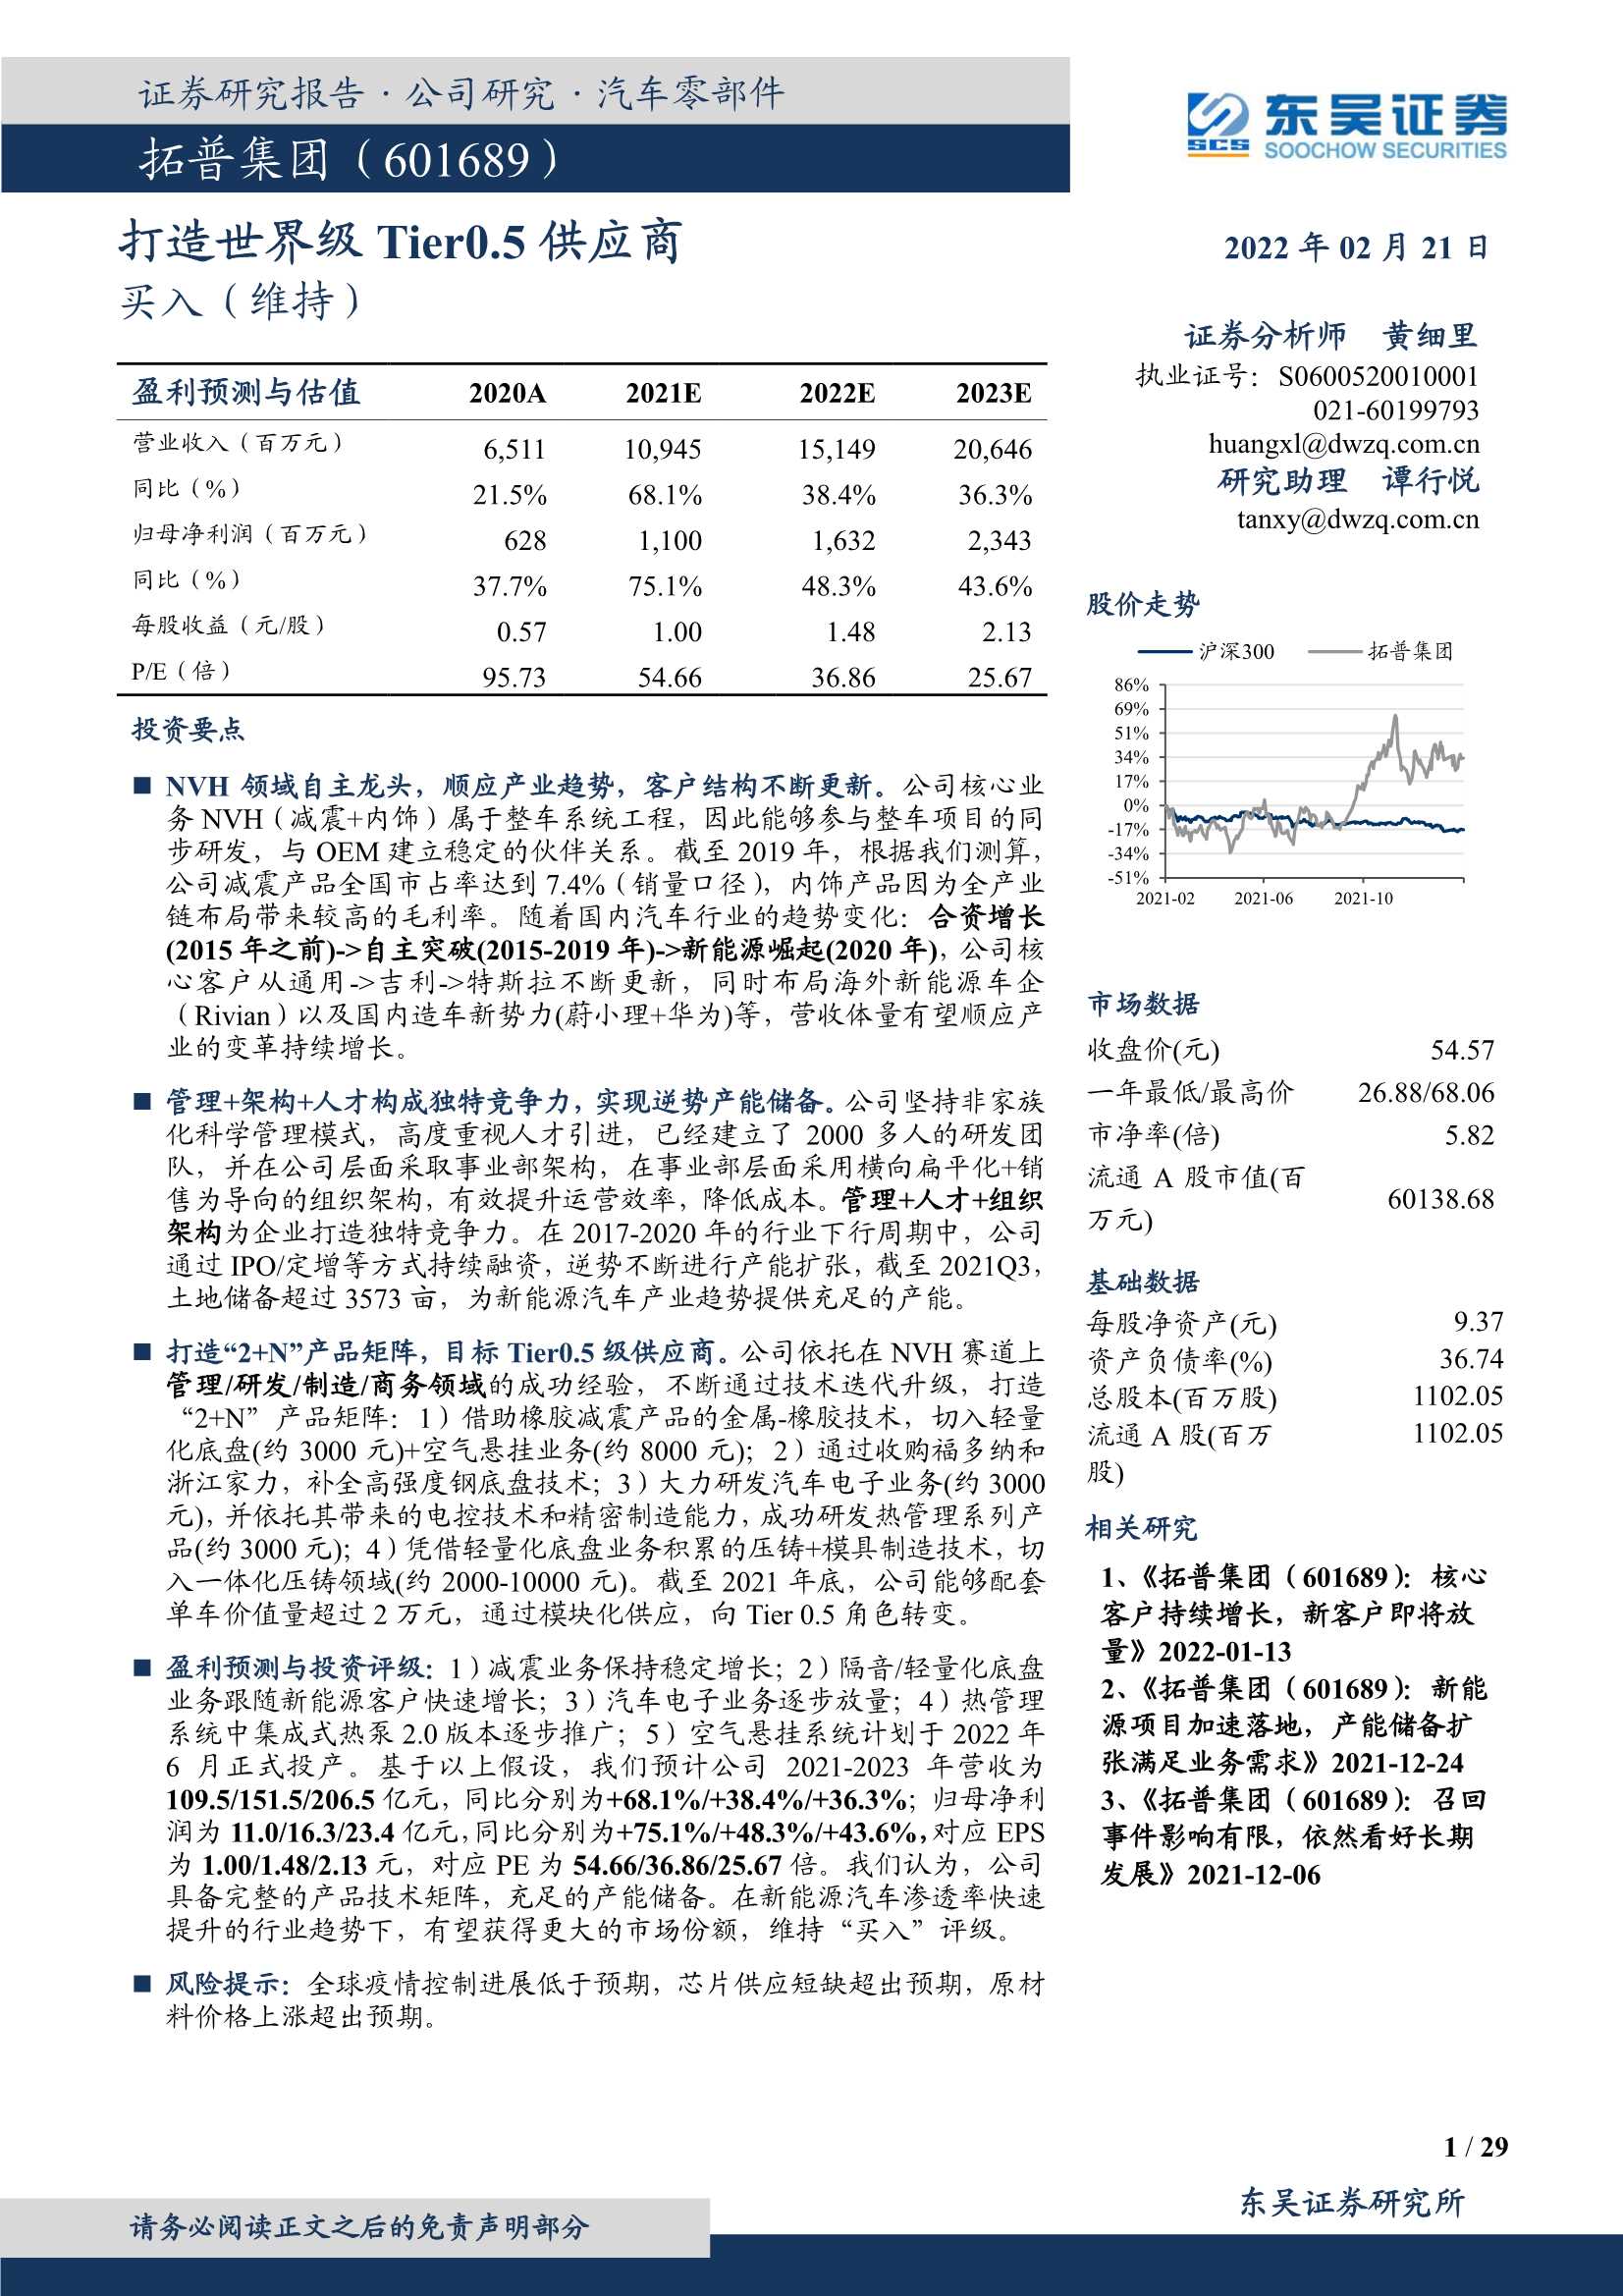 东吴证券-拓普集团-601689-打造世界级Tier0.5供应商-20220221-29页